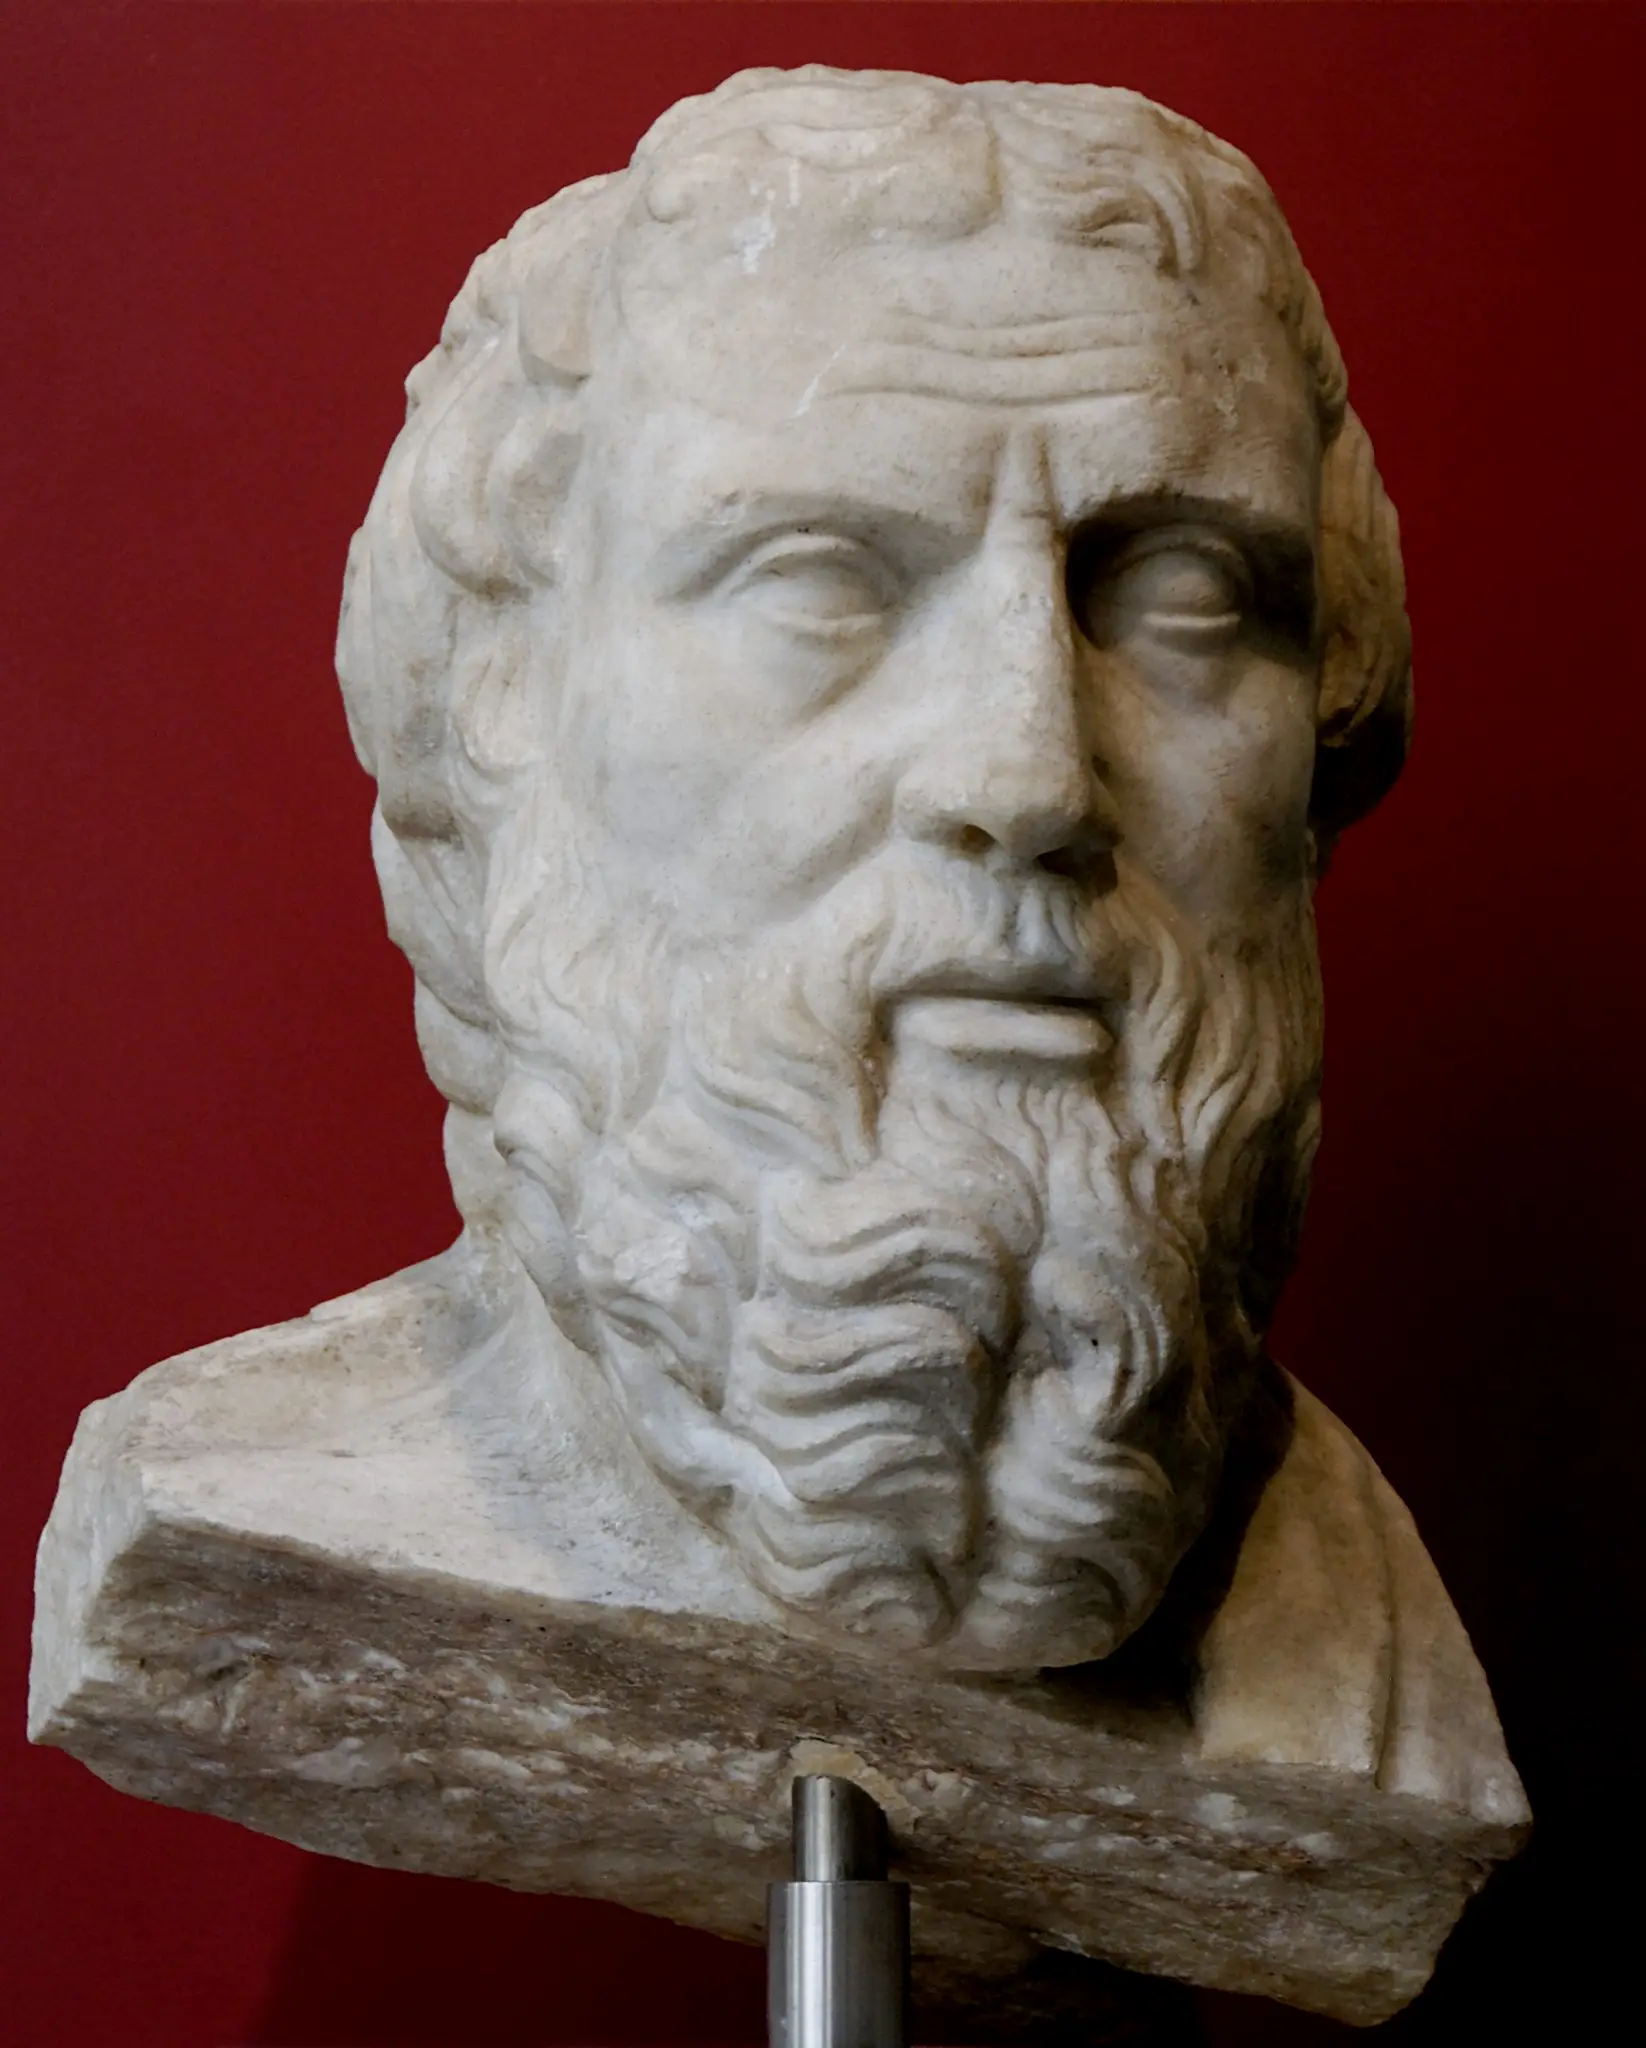 不过历史上，希罗多德就多次将波斯人和野蛮人等同描写。当然，如果希罗多德活在21世纪，他大概会成为一个公众号经营者而不是一位历史研究者吧。